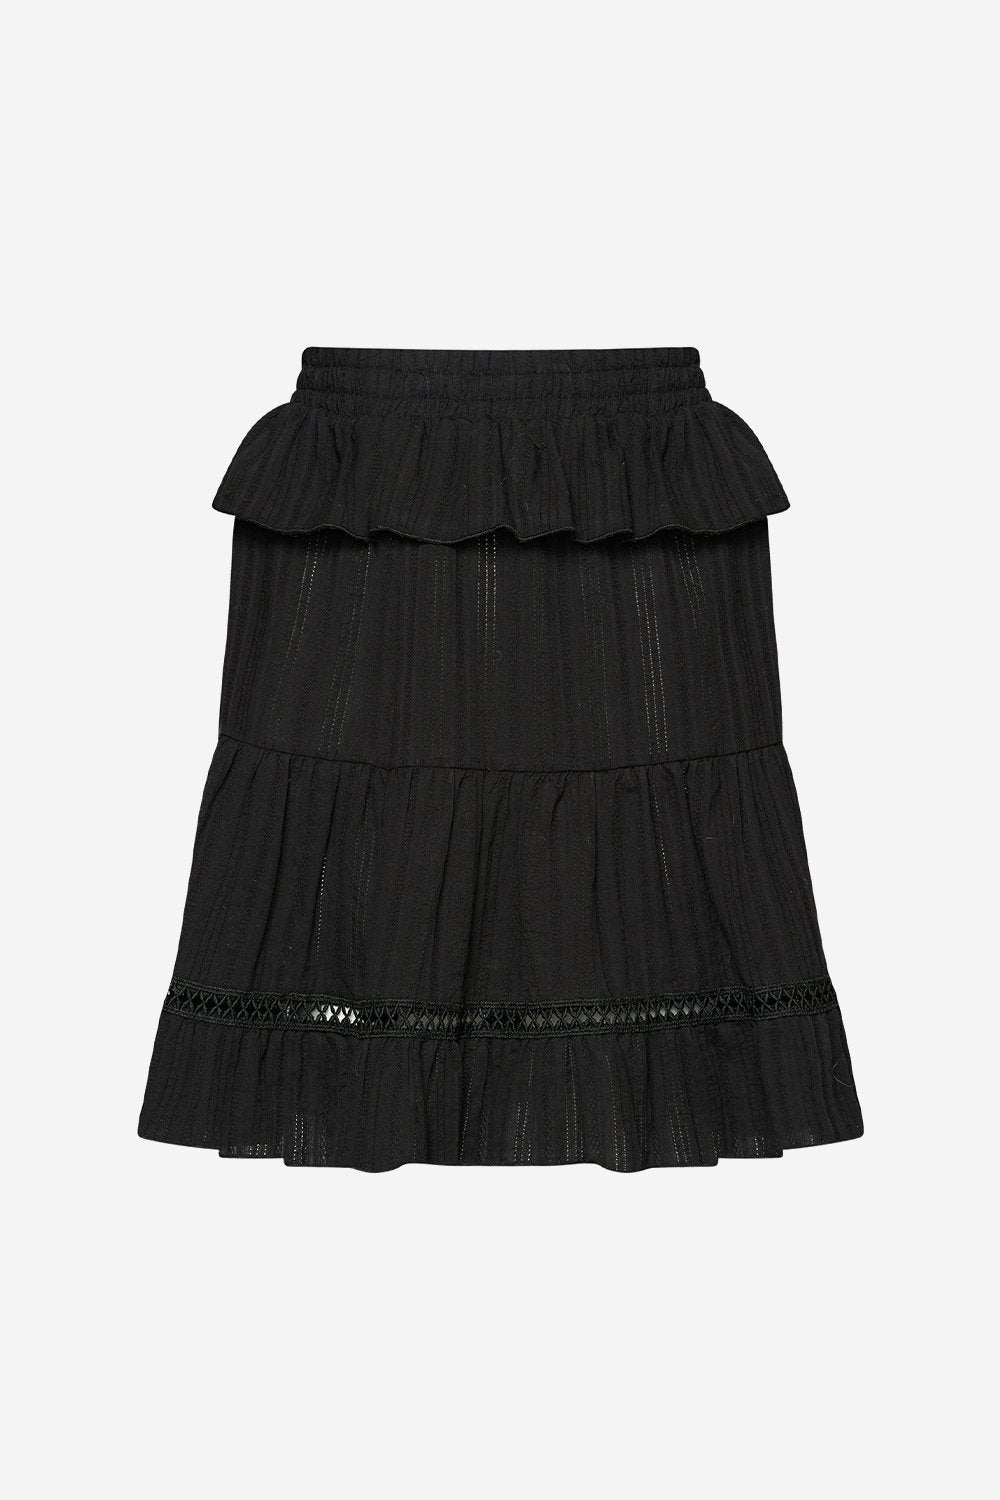 Lucca Skirt Black